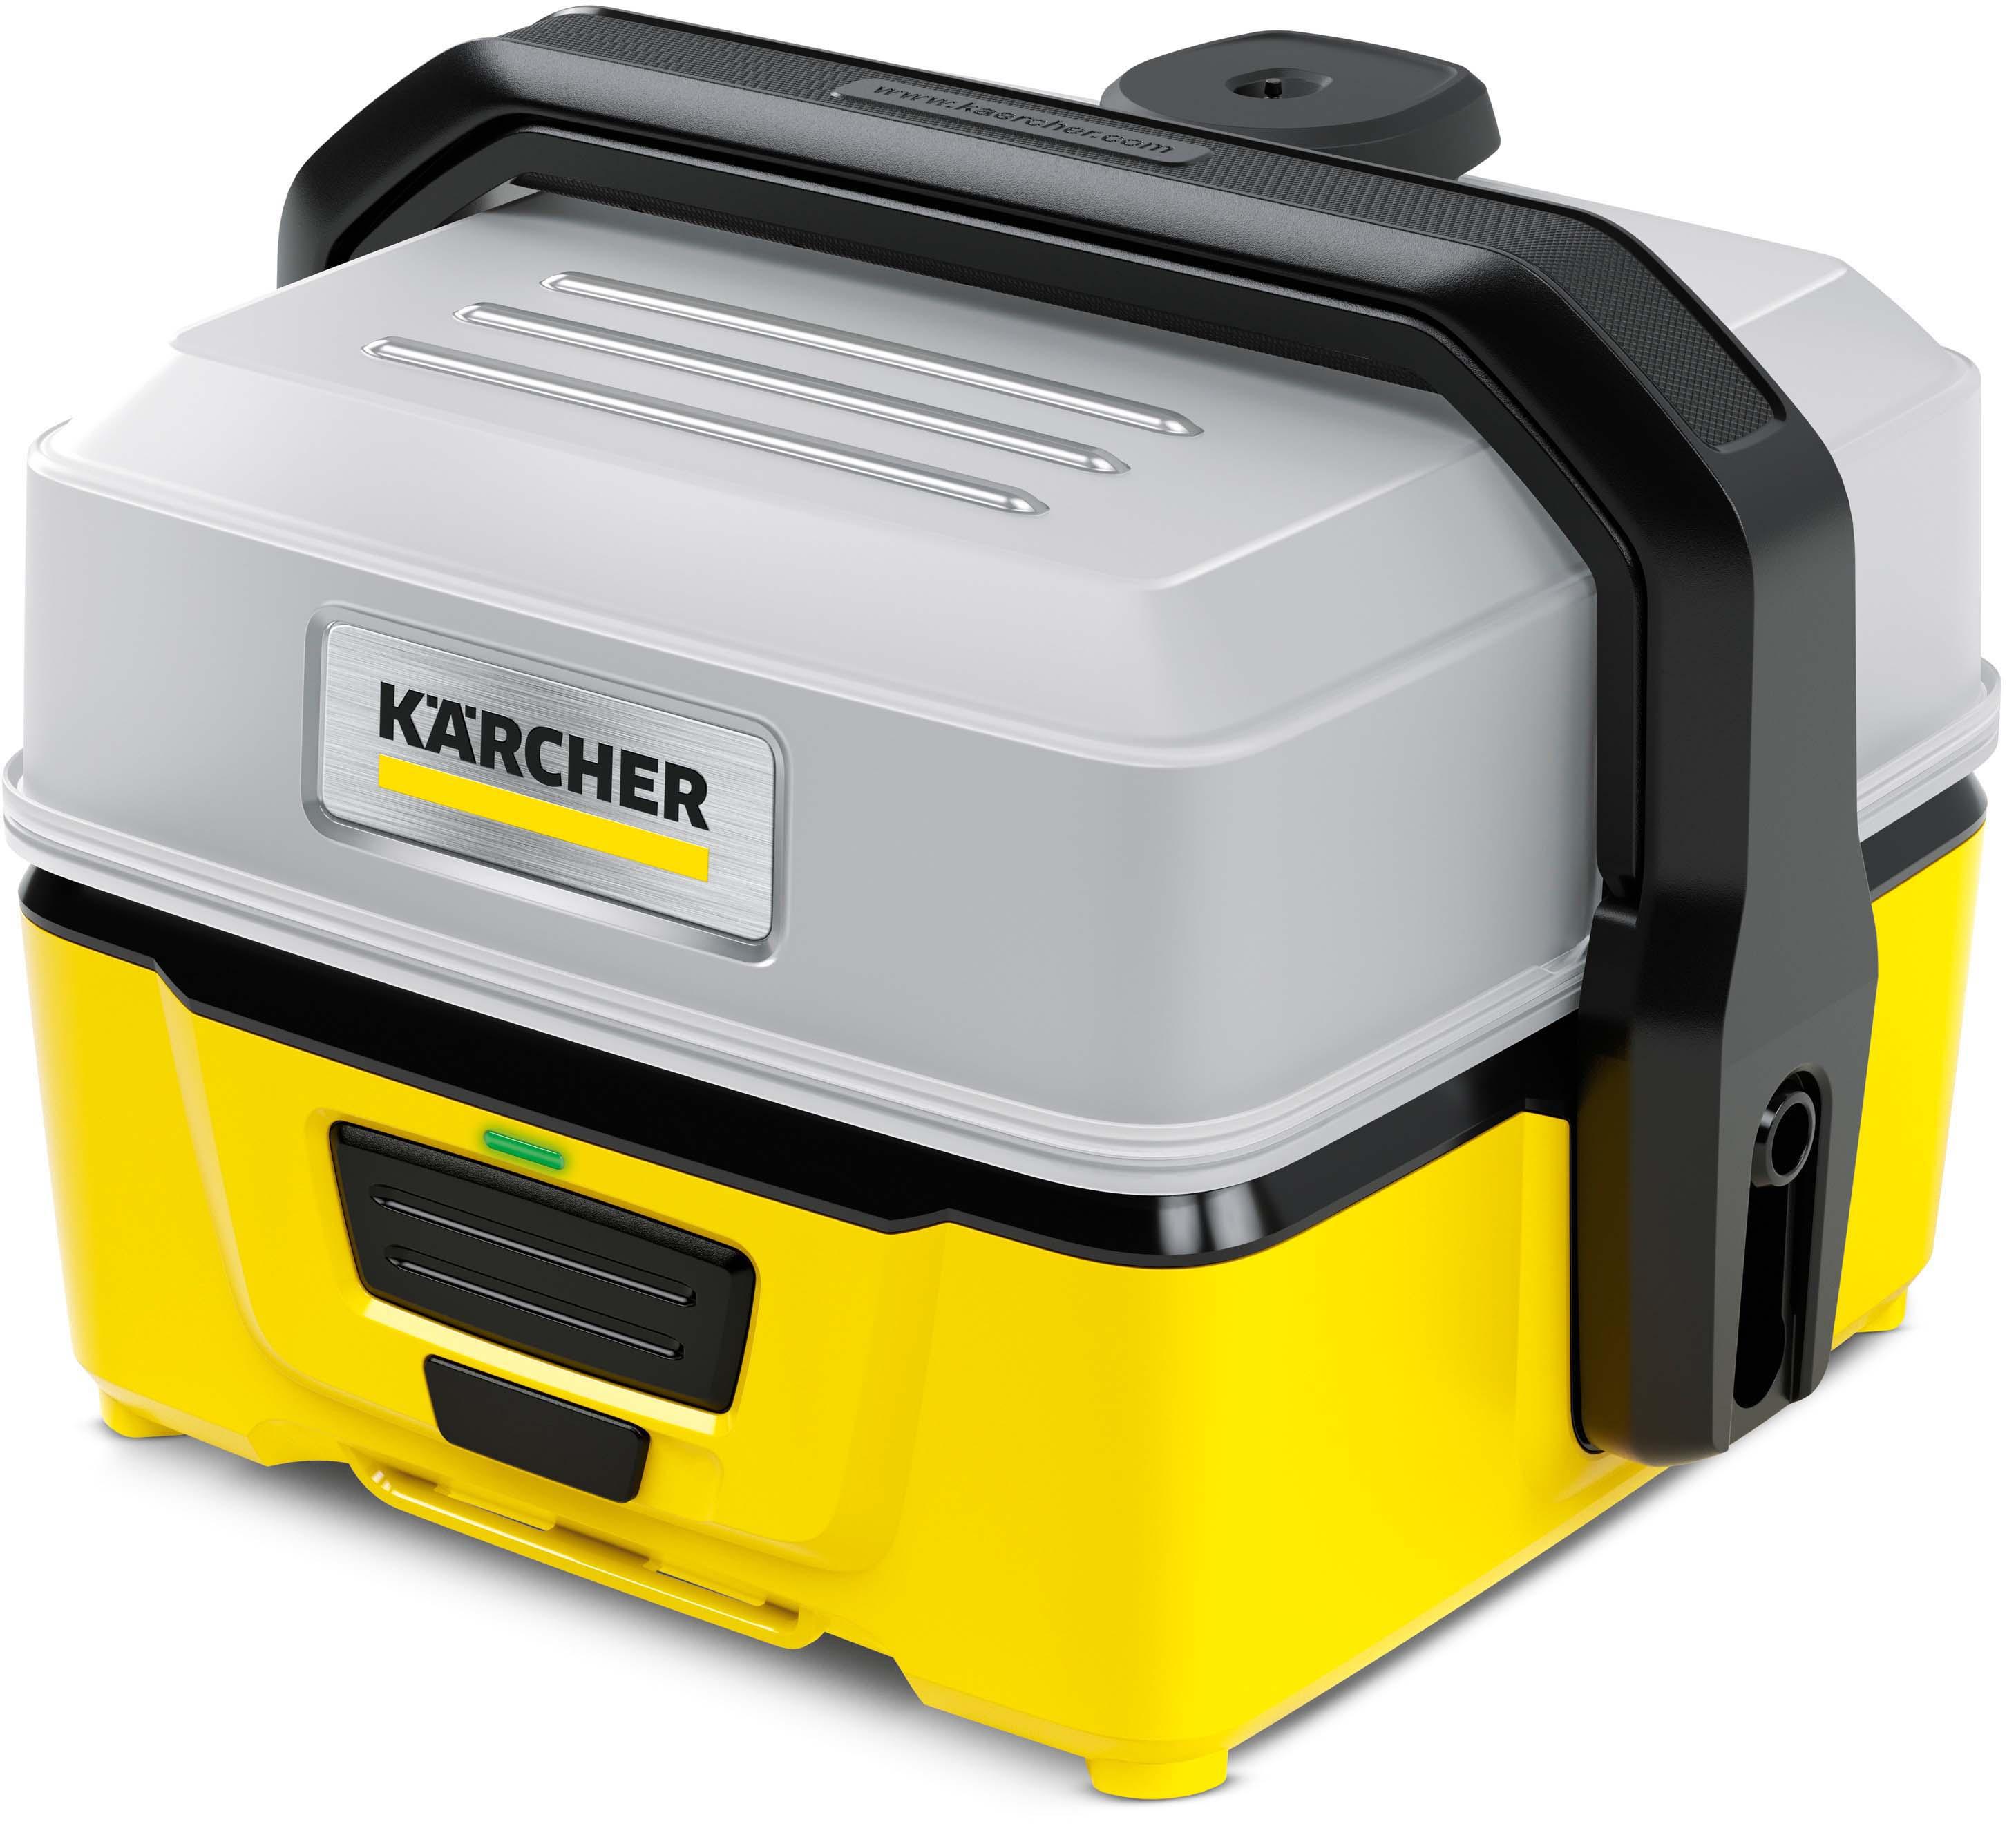 Karcher Oc3 Portable Cleaner